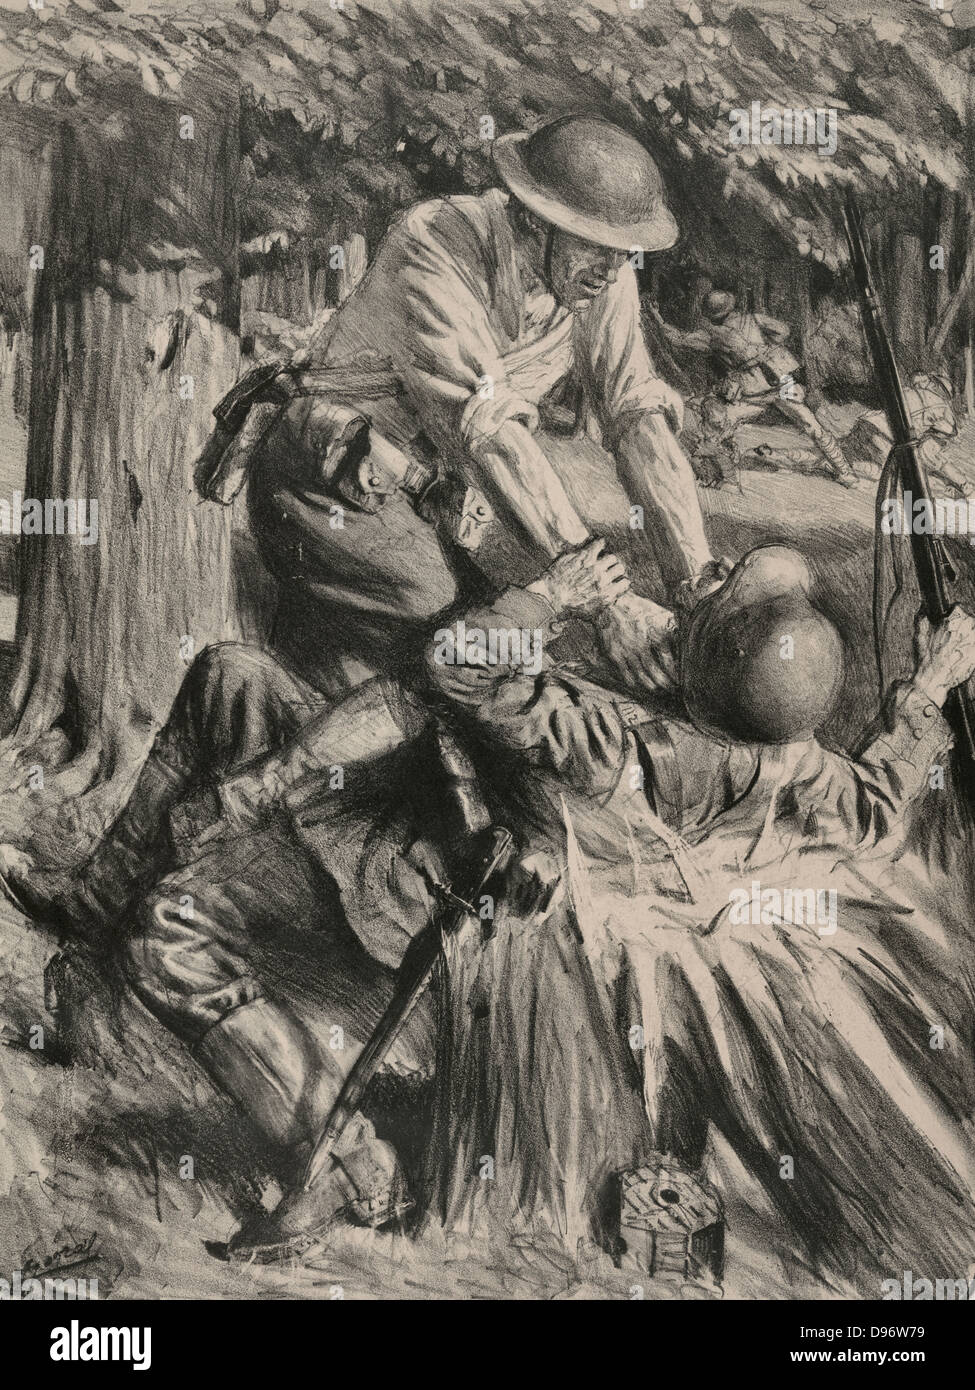 Au bois Belleau - en bois Belleau. Soldat américain d'étrangler un soldat à Belleau Wood combat pendant la Première Guerre mondiale. Banque D'Images